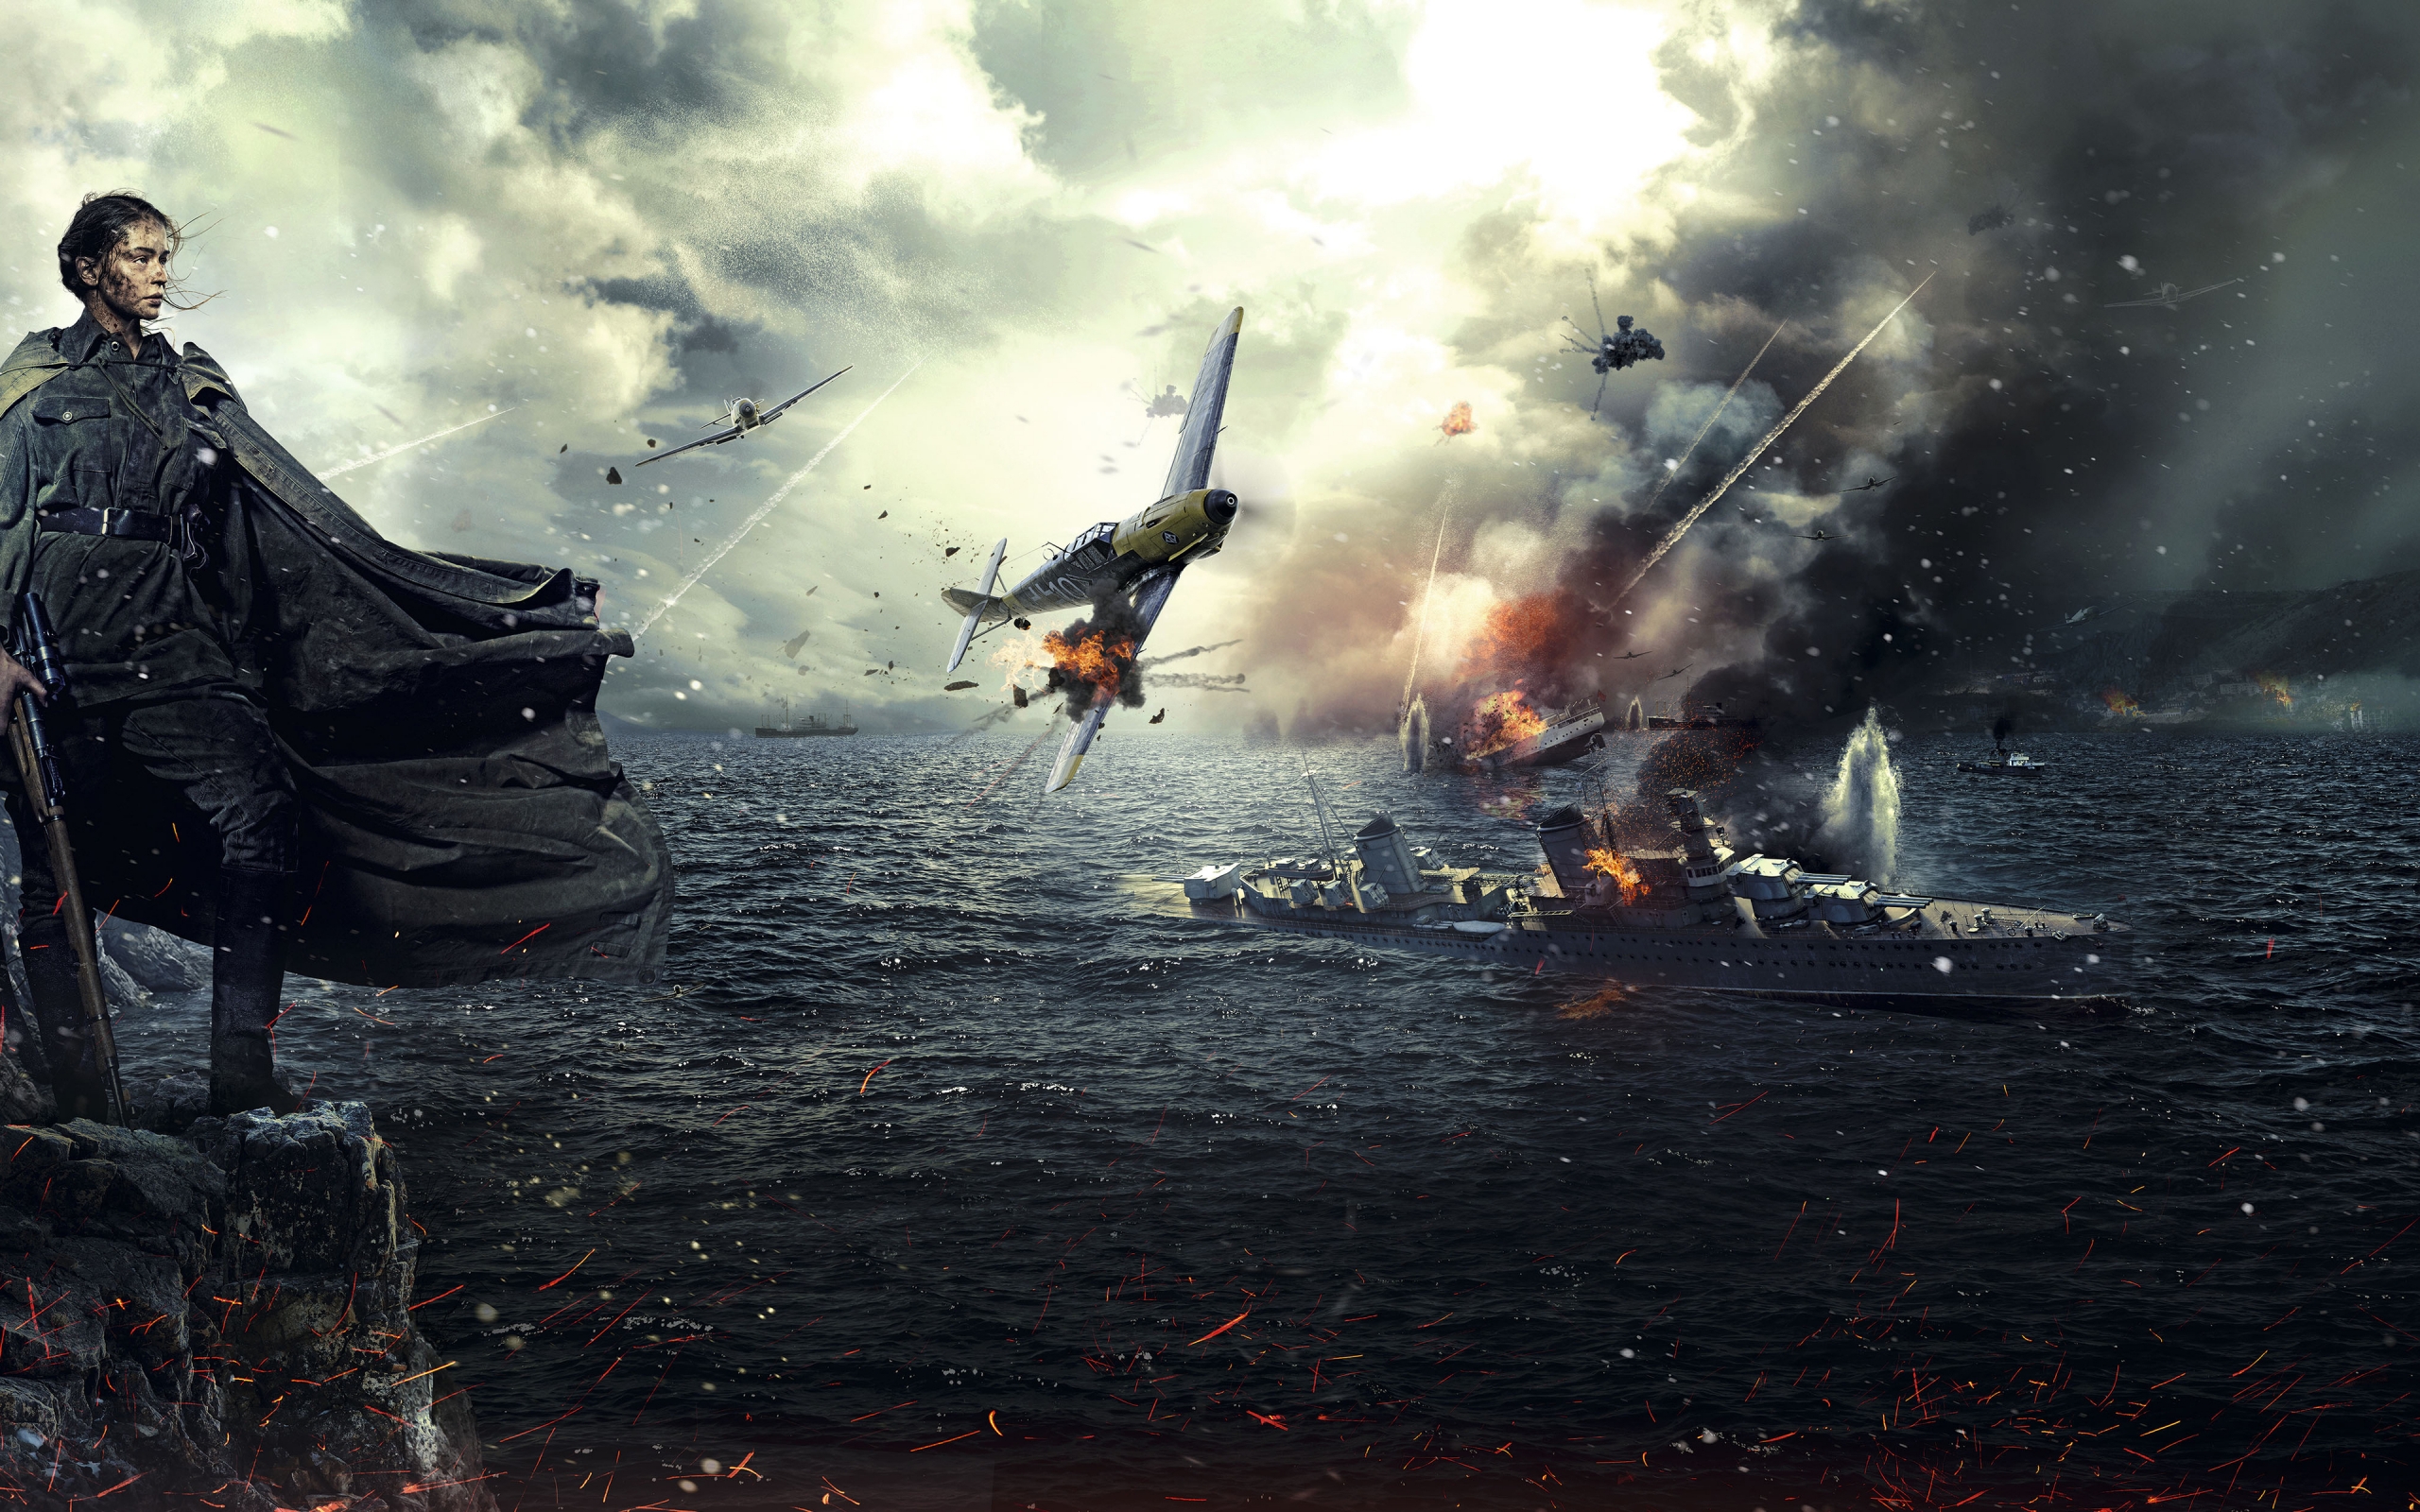 Battle for Sevastopol 2015 for 2560 x 1600 widescreen resolution